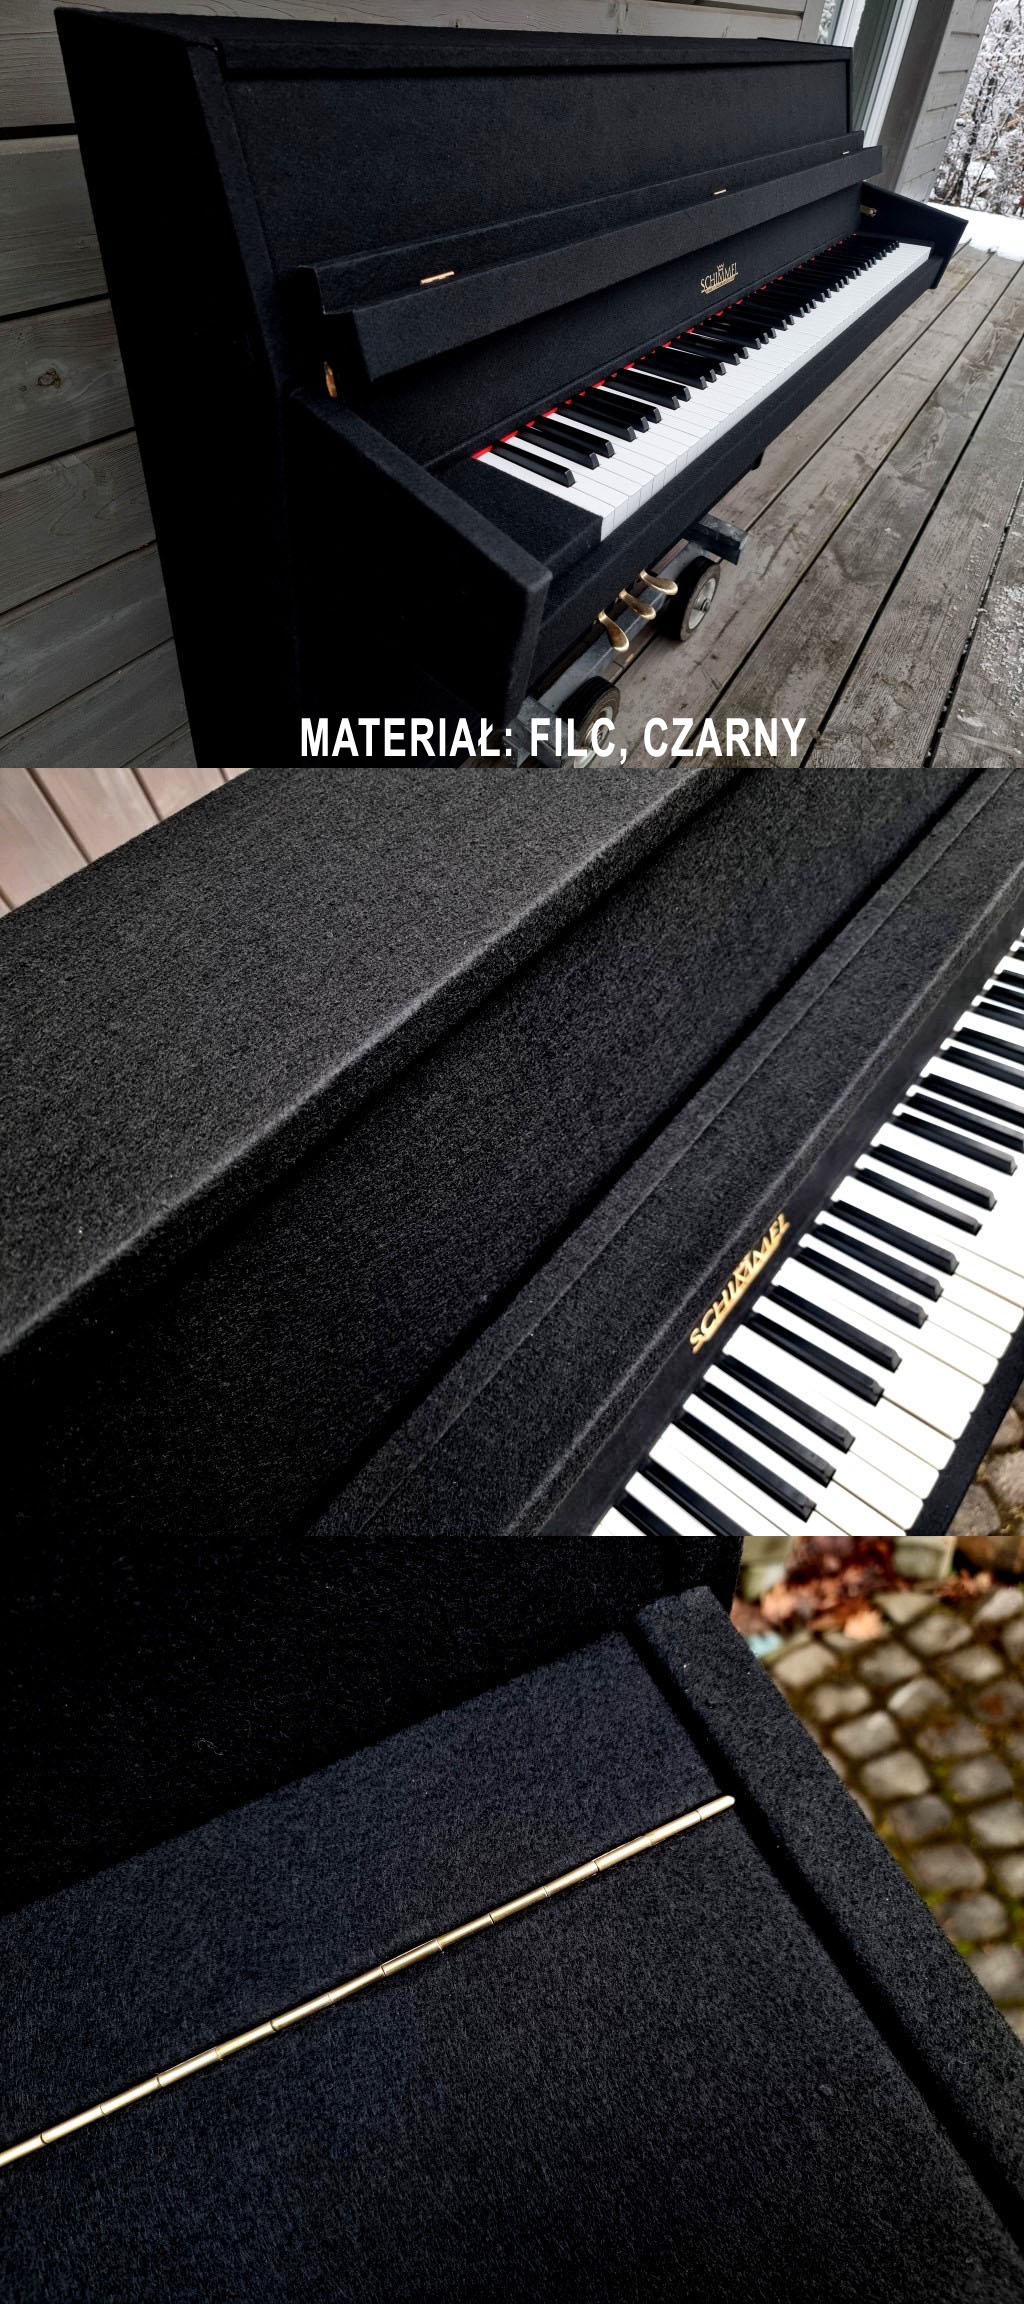 Czy podobają Wam się pianina w obudowie obitej materiałem zamiast lakierowanej? 